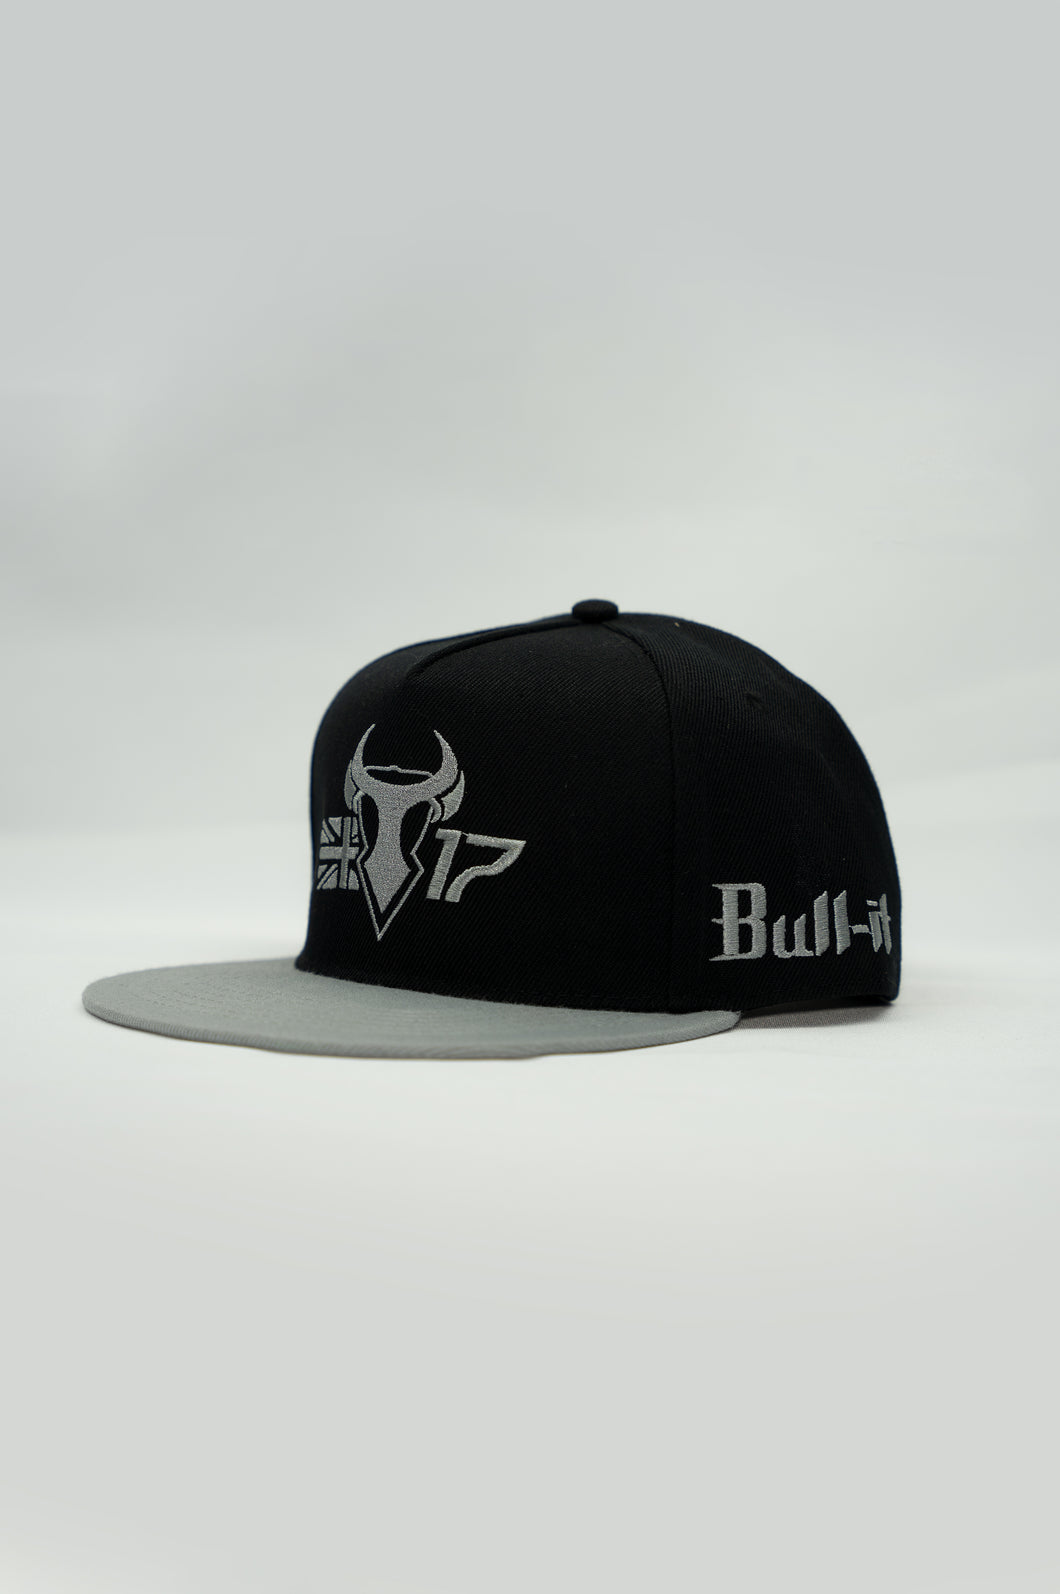 Bull-it Cap